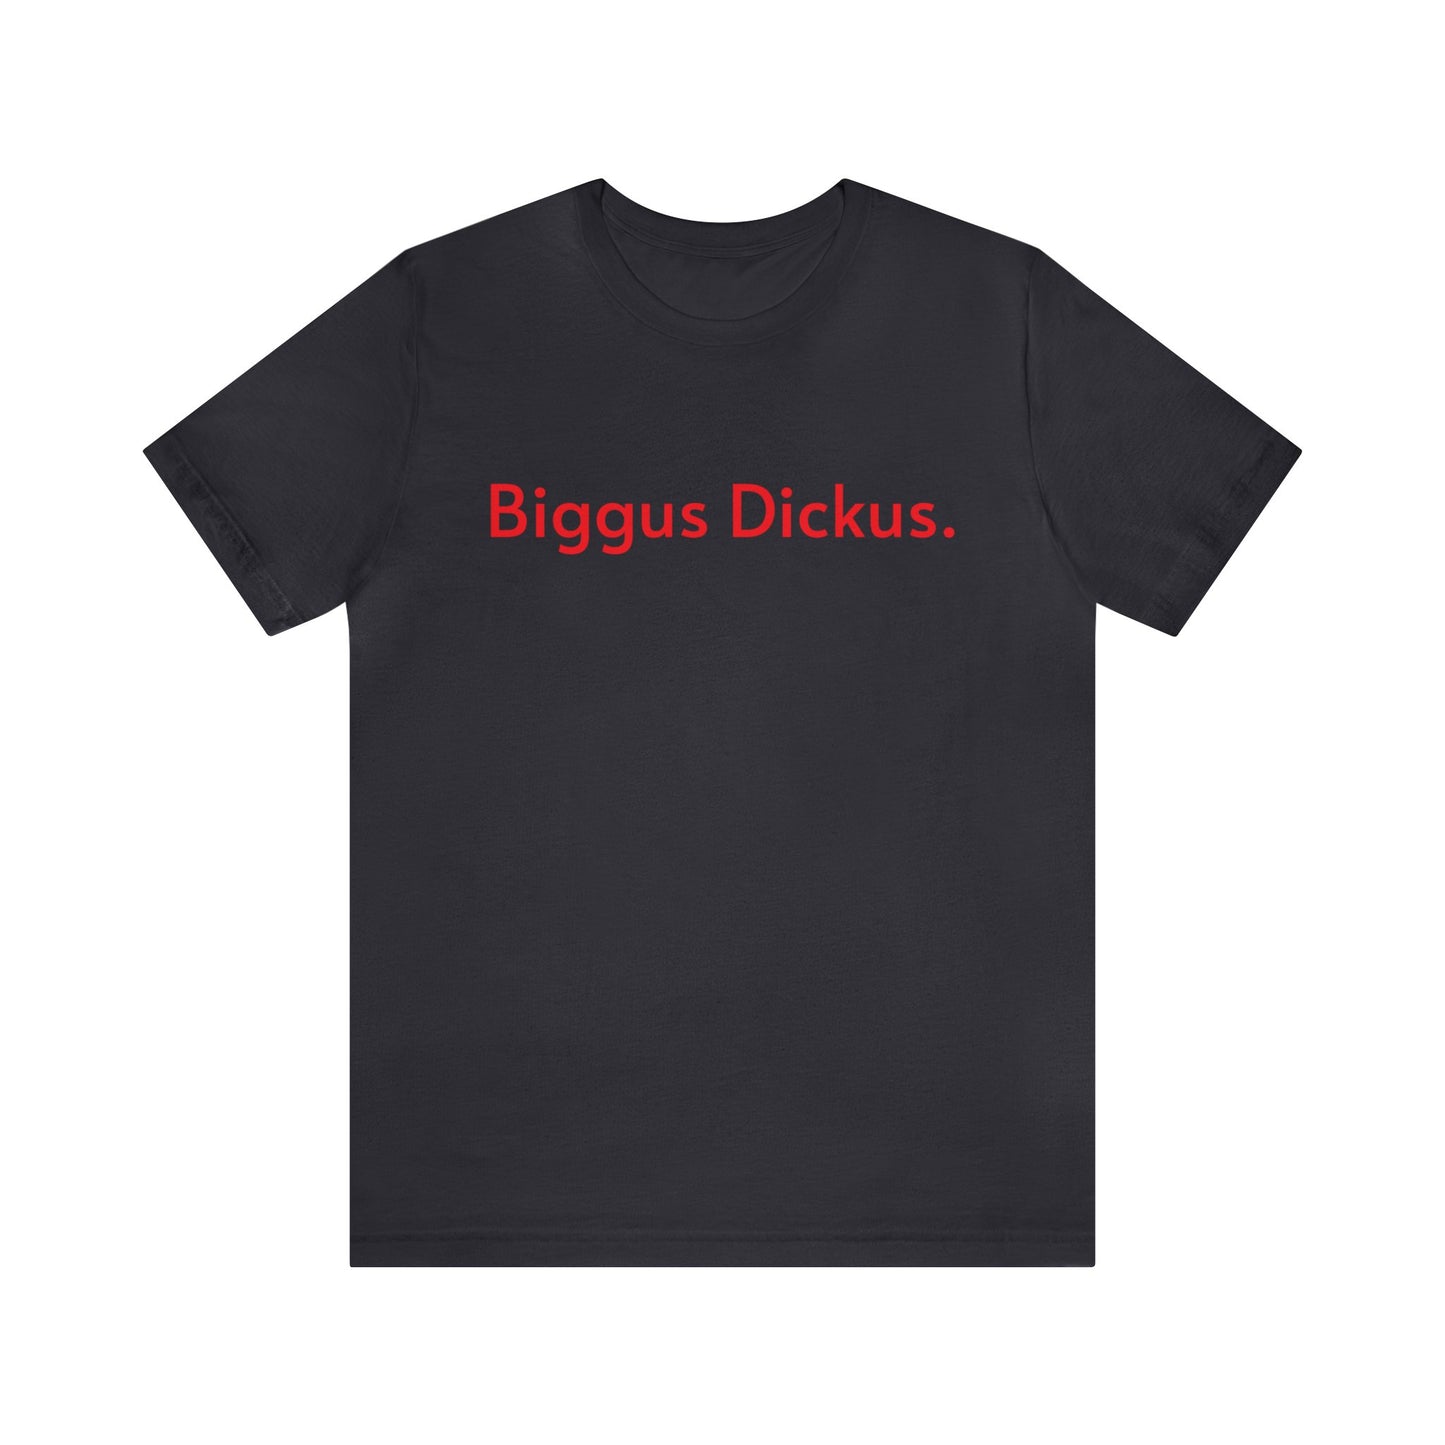 Biggus Dickus.